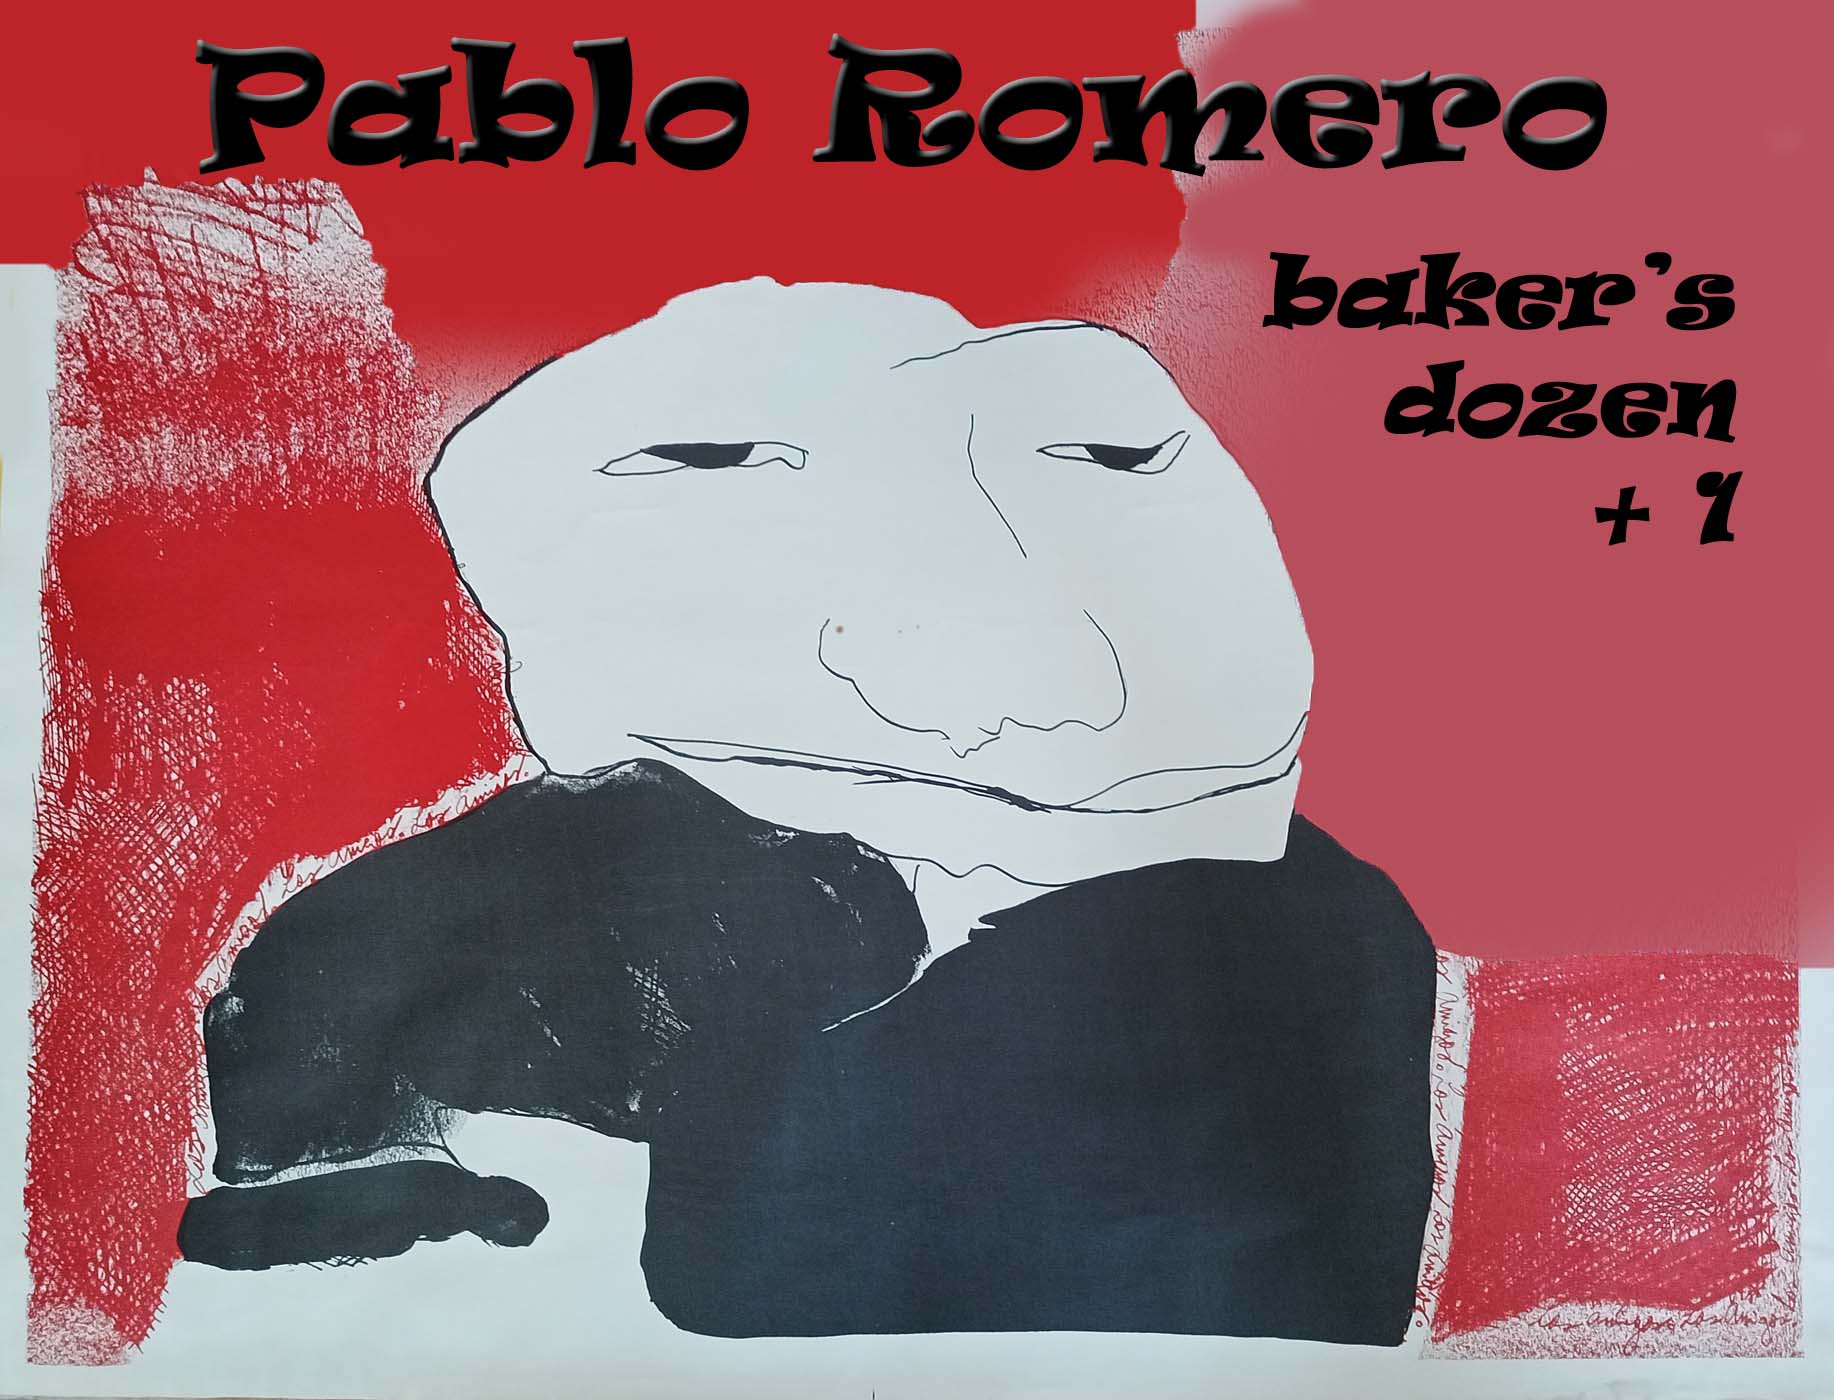 Works bt Pablo Romero